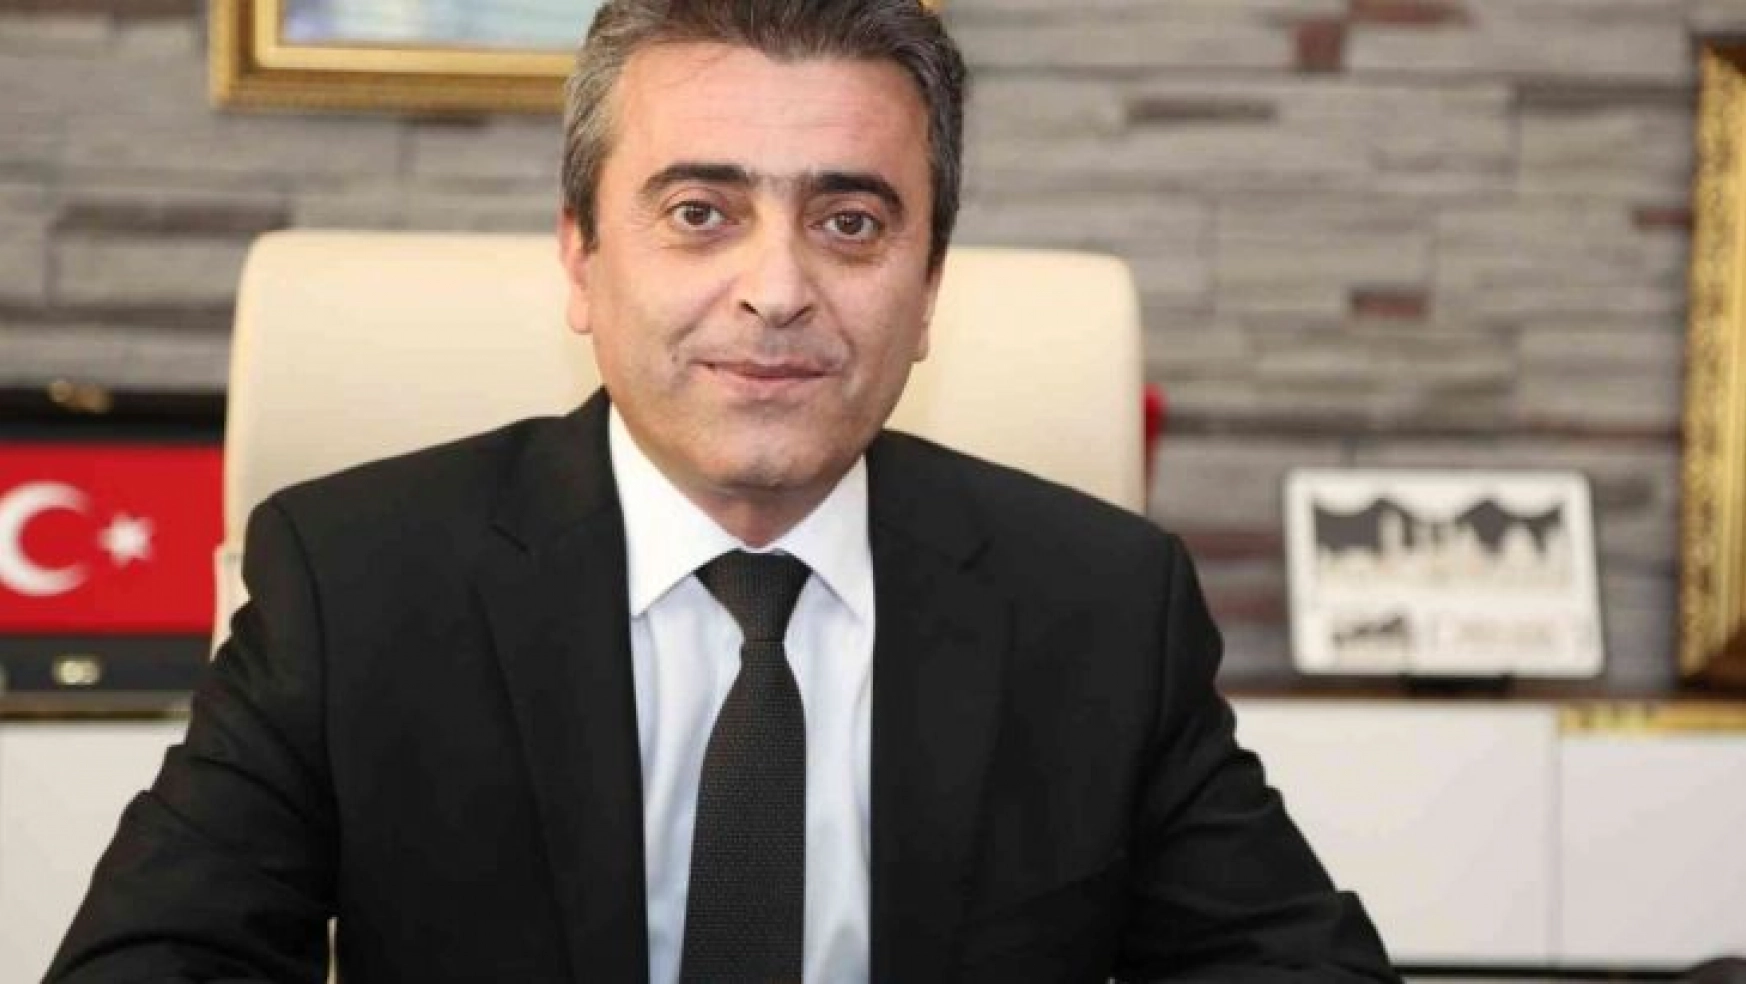 Erzurum'da sağlık çalışanlarına uygunsuz sözler sarf eden sağlık bakım hizmetleri müdürü hakkında soruşturma açıldı